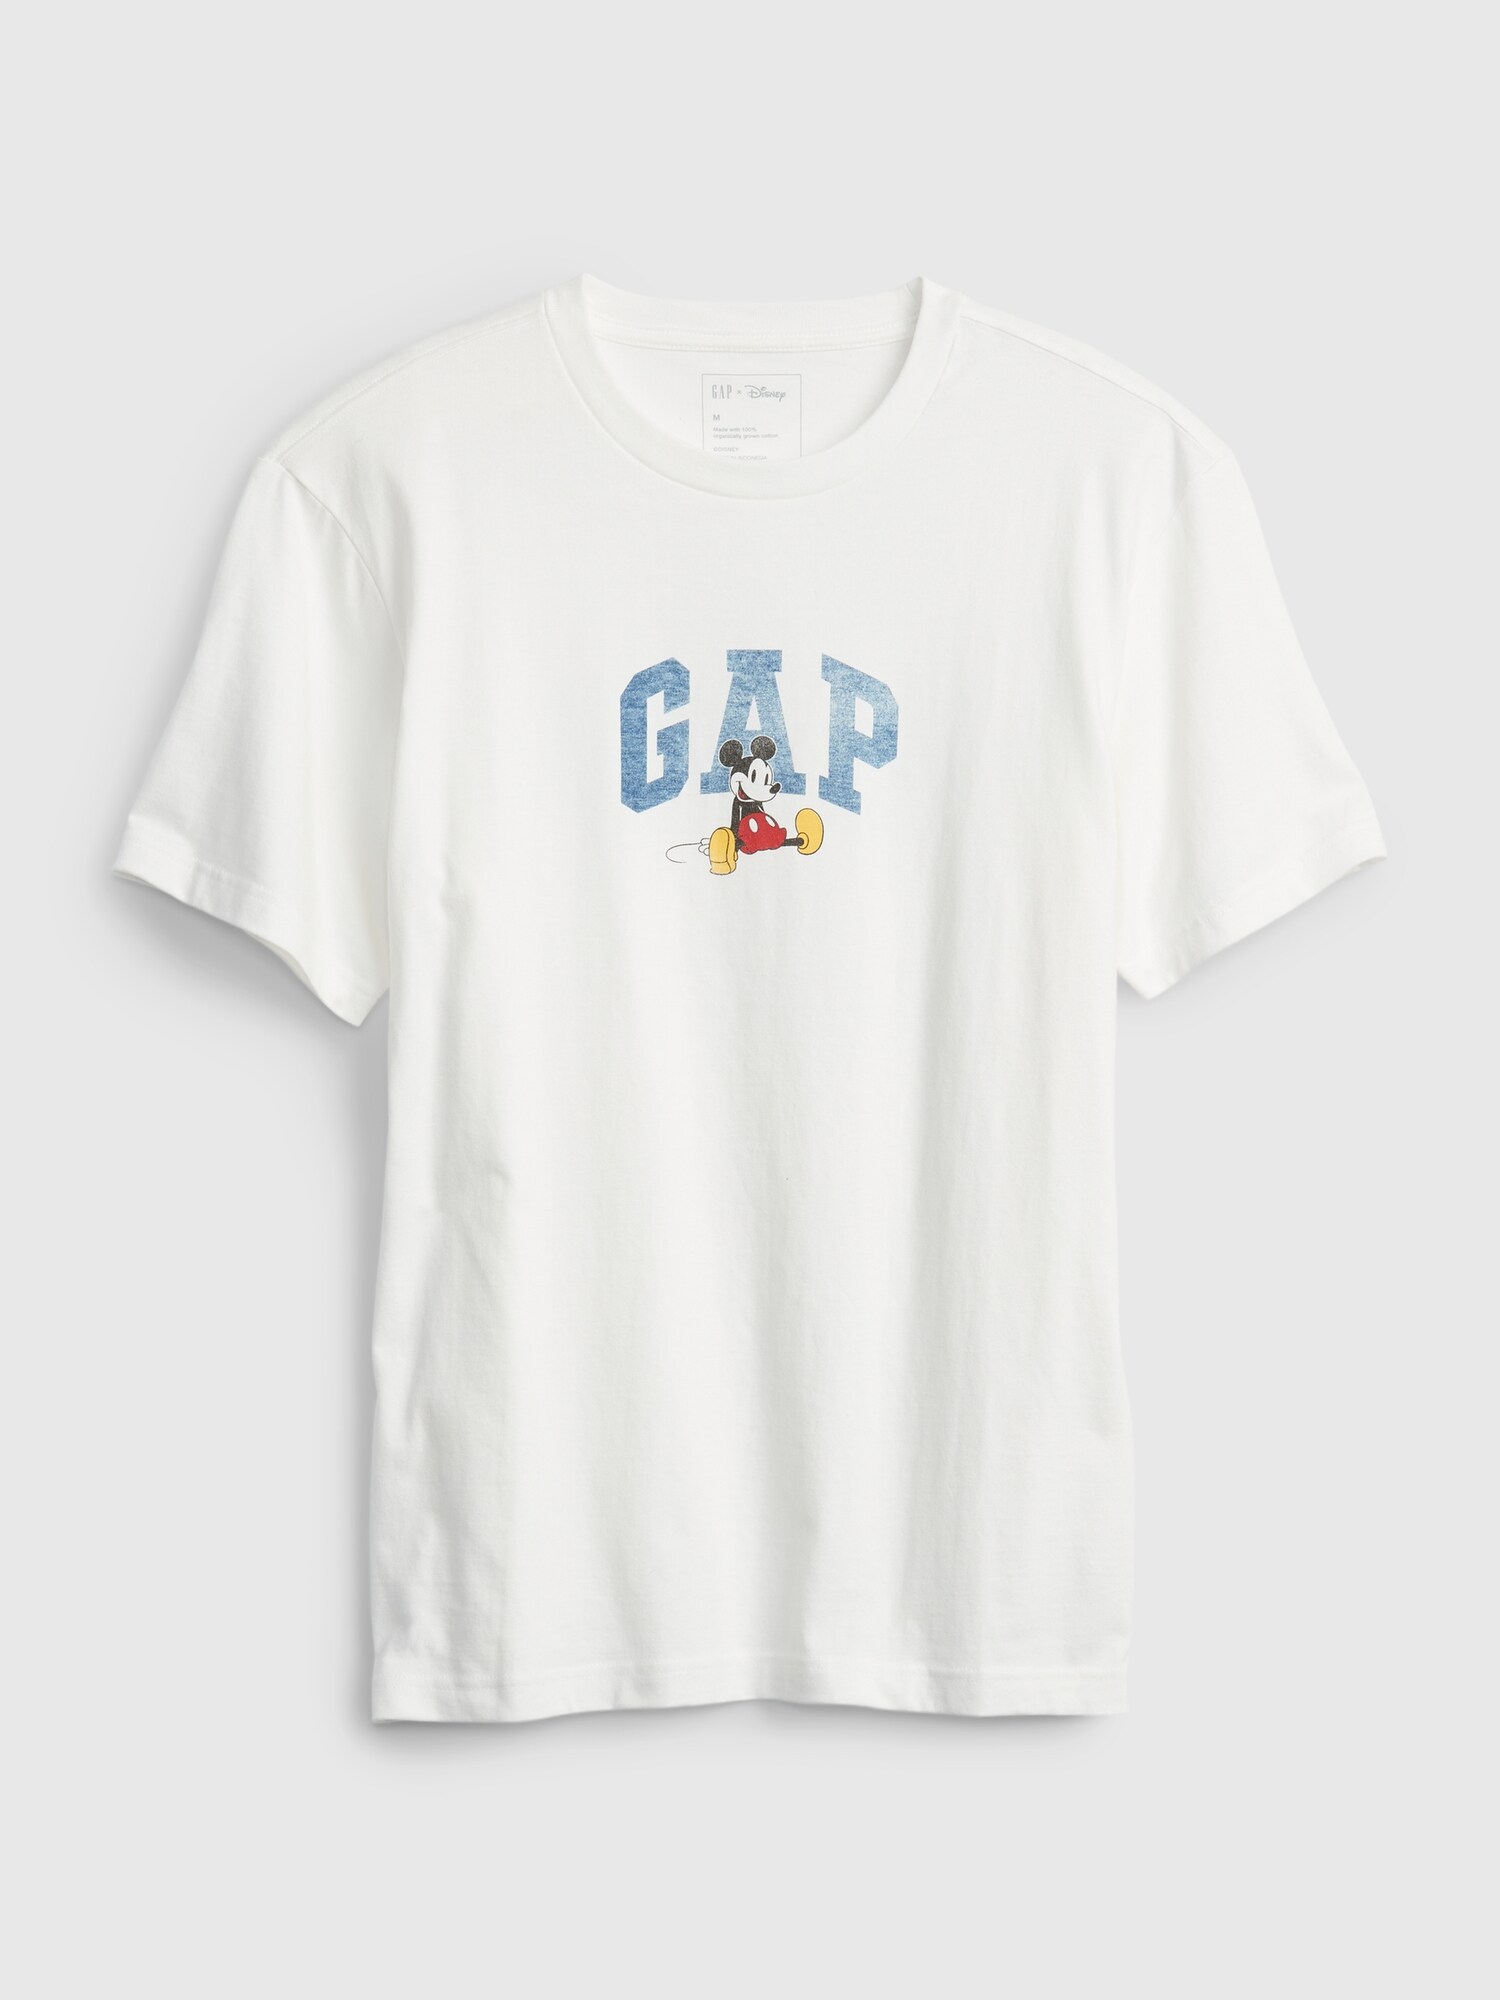 Gap ディズニー オーガニックコットン100% グラフィックtシャツ (大人サイズ・ユニセックス)